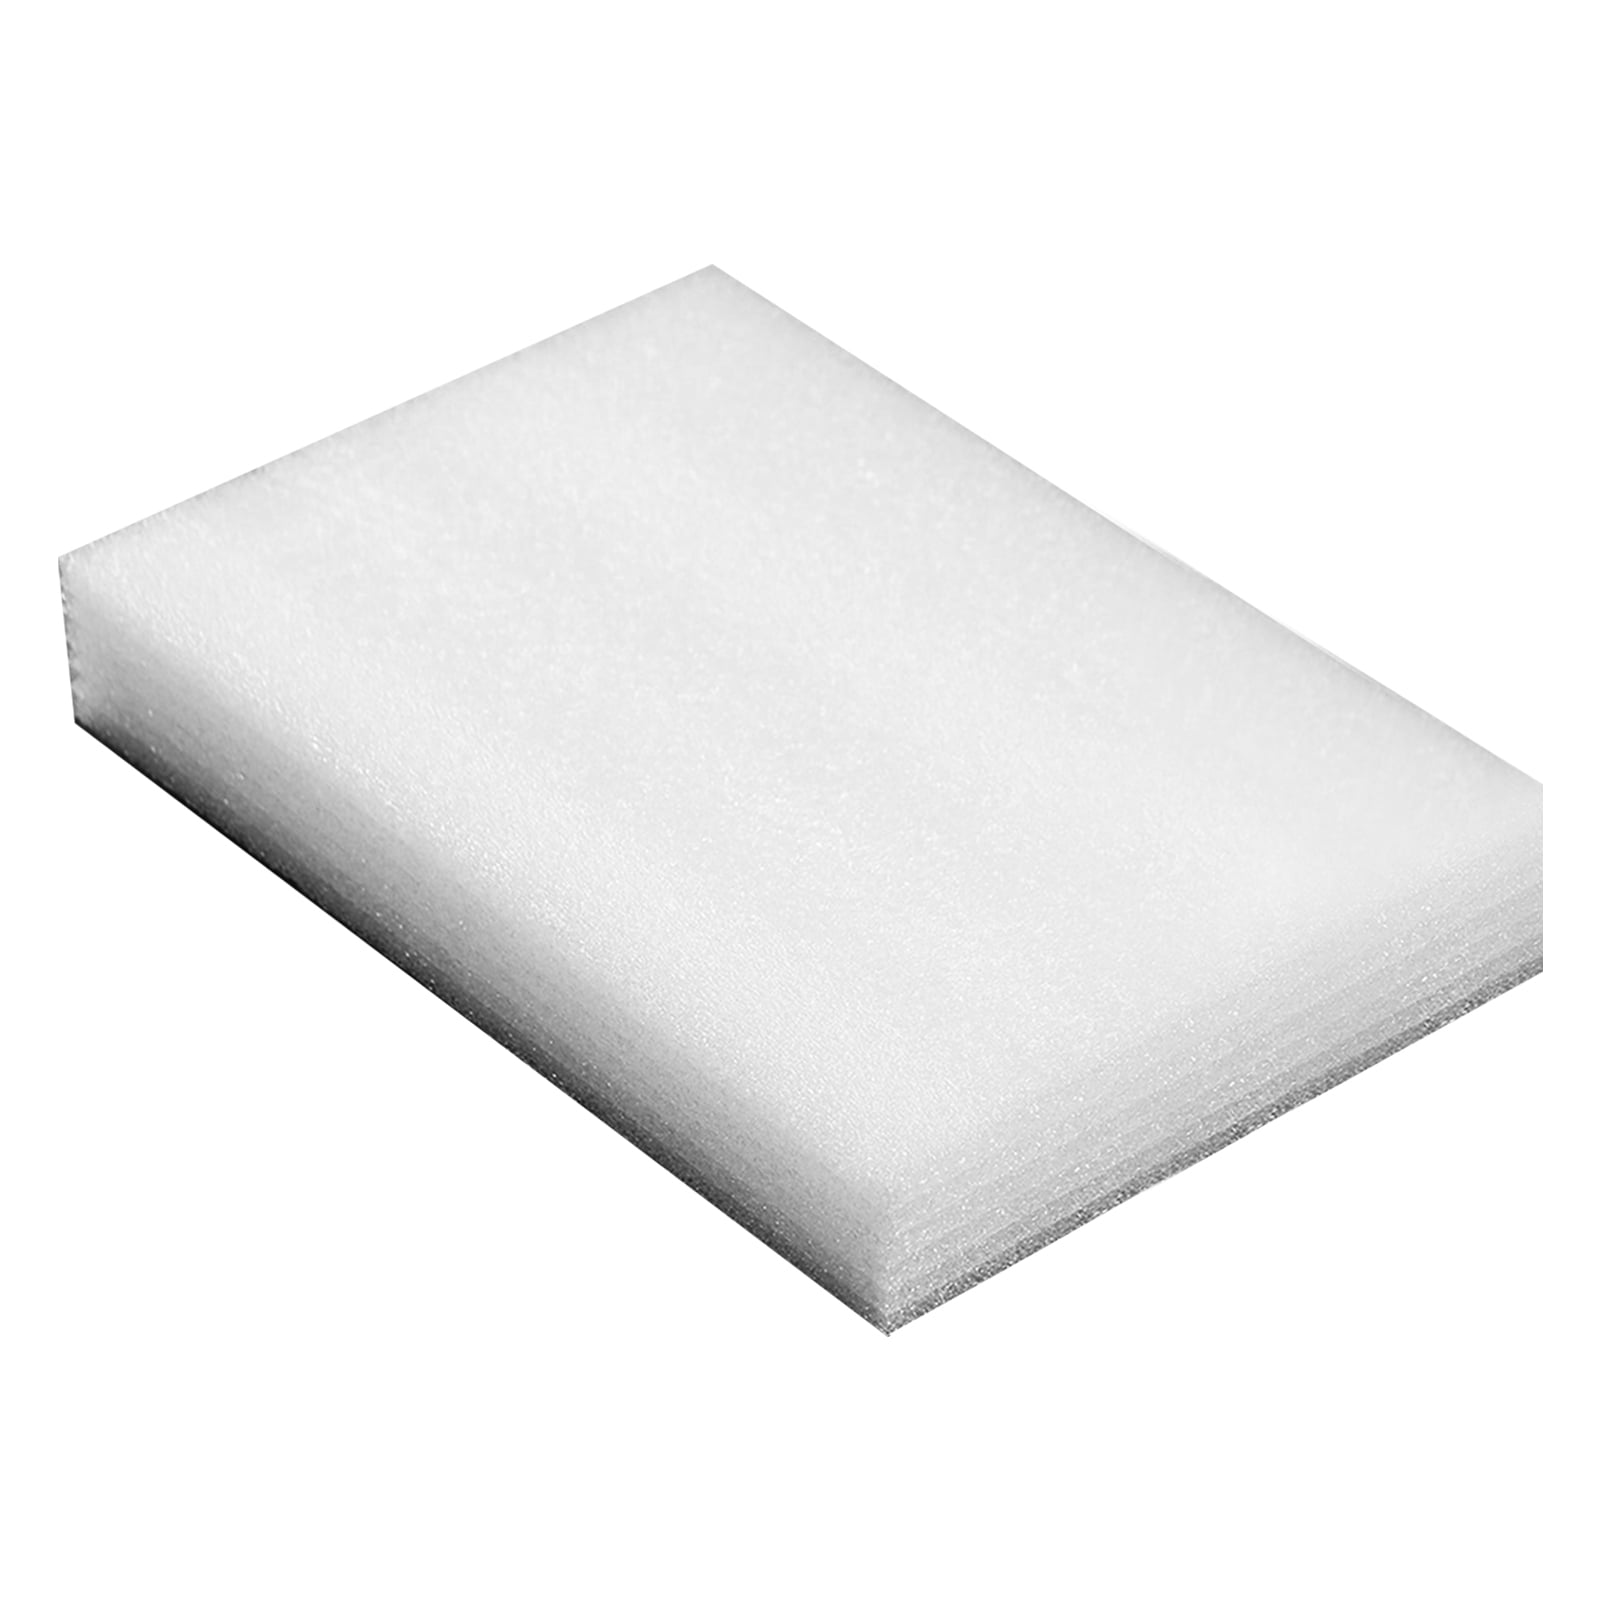 Dry Foam Block Shockproof Dry Foam Packaging Foam Dry Foam White Pearl  Cotton Rectangle Foam Block Shockproof Packaging Foam For Wedding Birthday  Party9x18x4.5 Cm / 3.5x7.1x1.8 In 